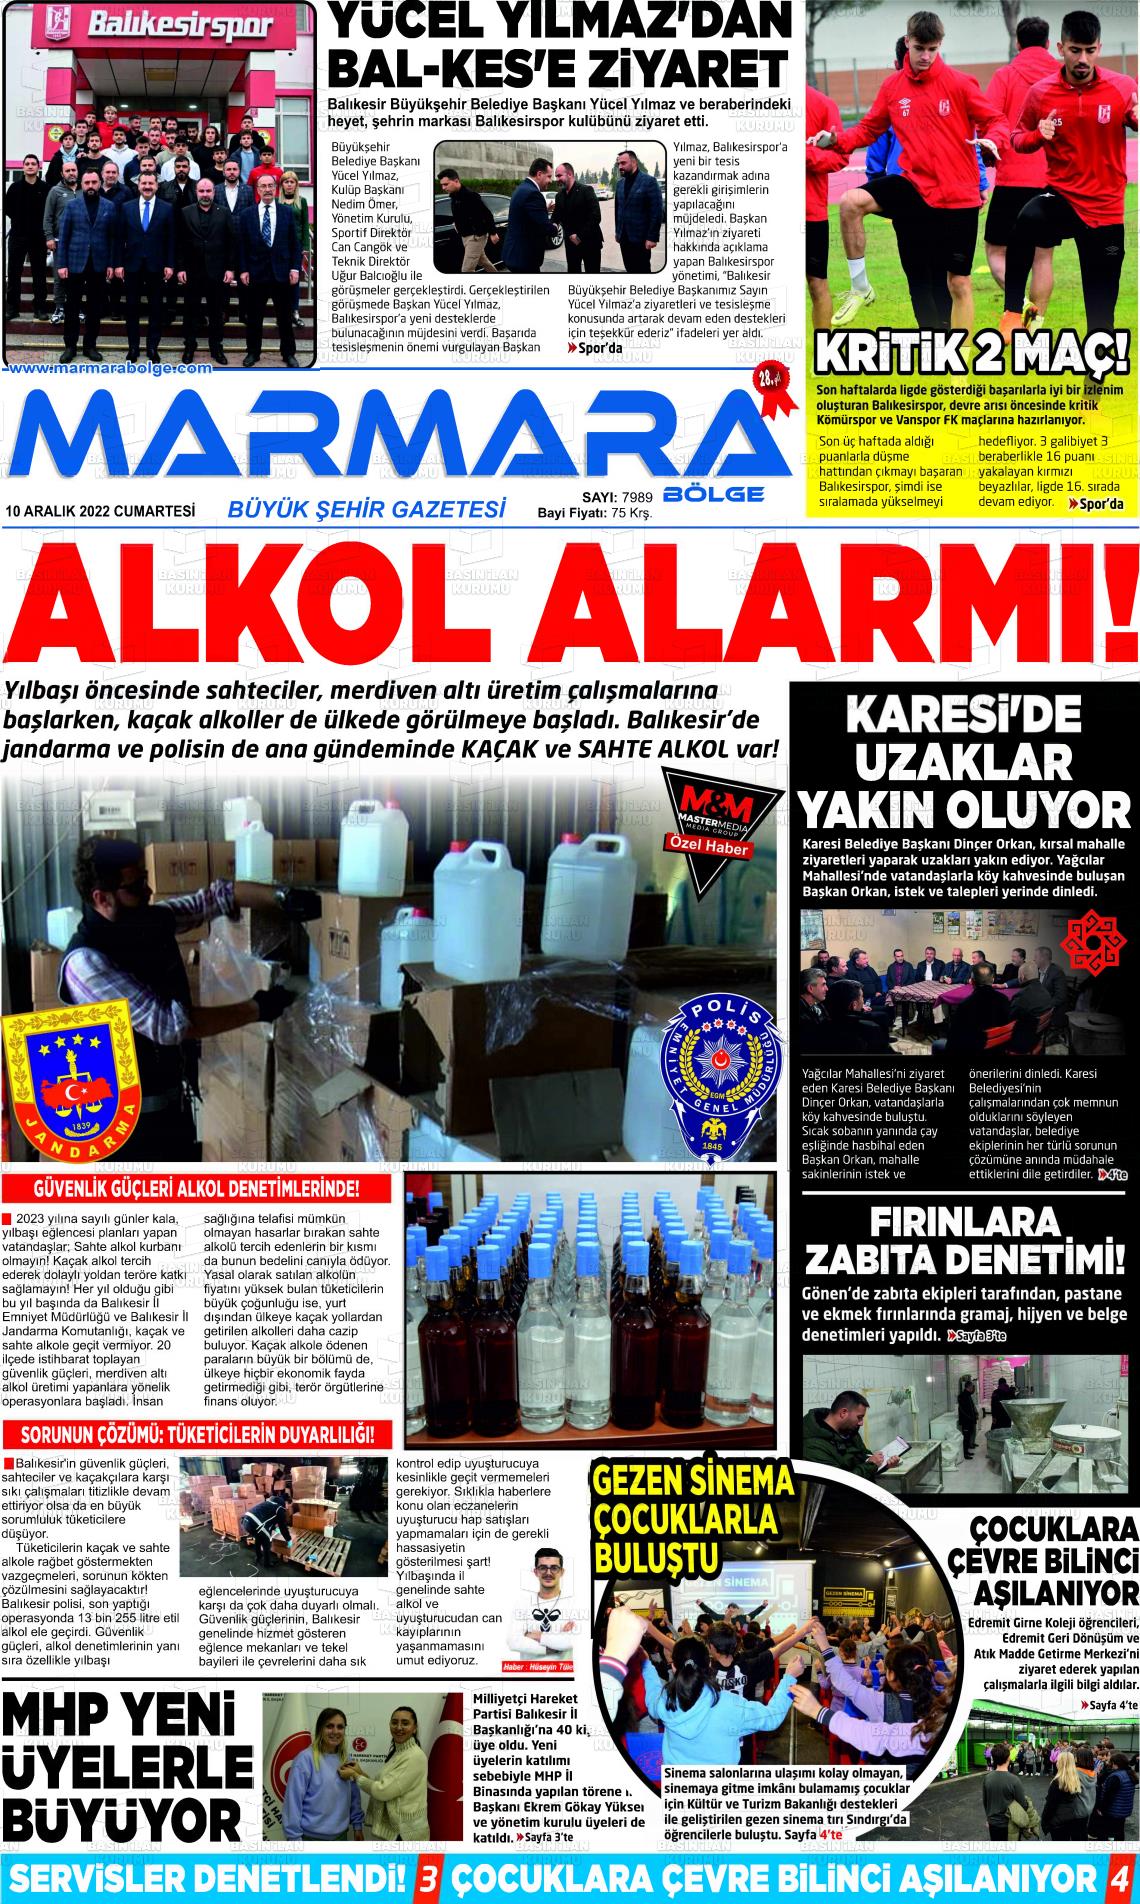 10 Aralık 2022 Marmara Bölge Gazete Manşeti